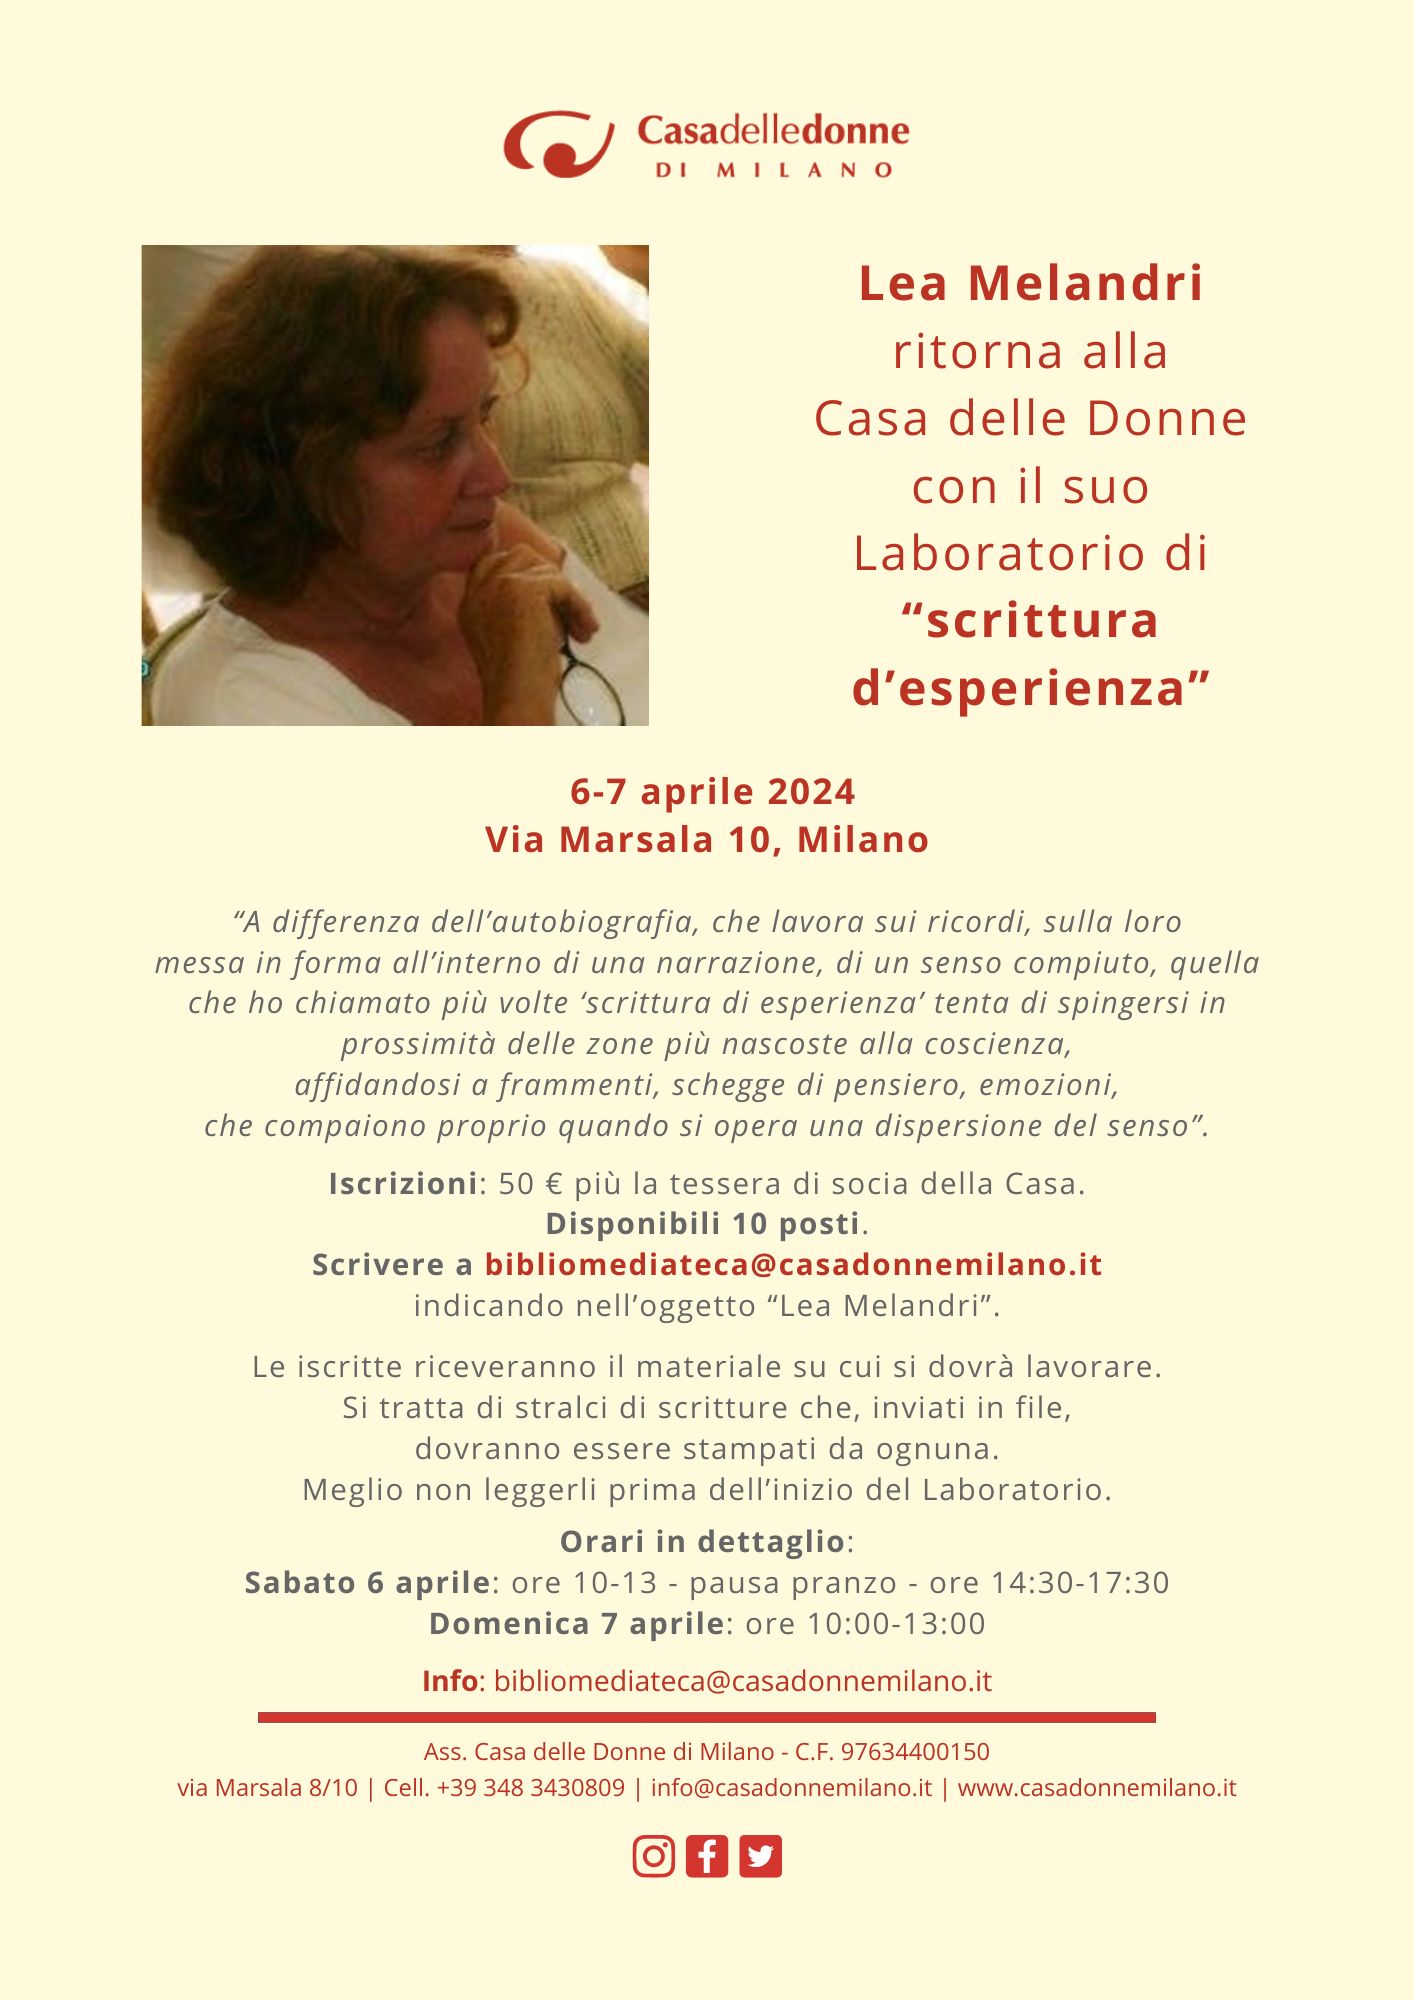 Laboratorio 2 di scrittura di esperienza con Lea Melandri @ Casa delle Donne di Milano